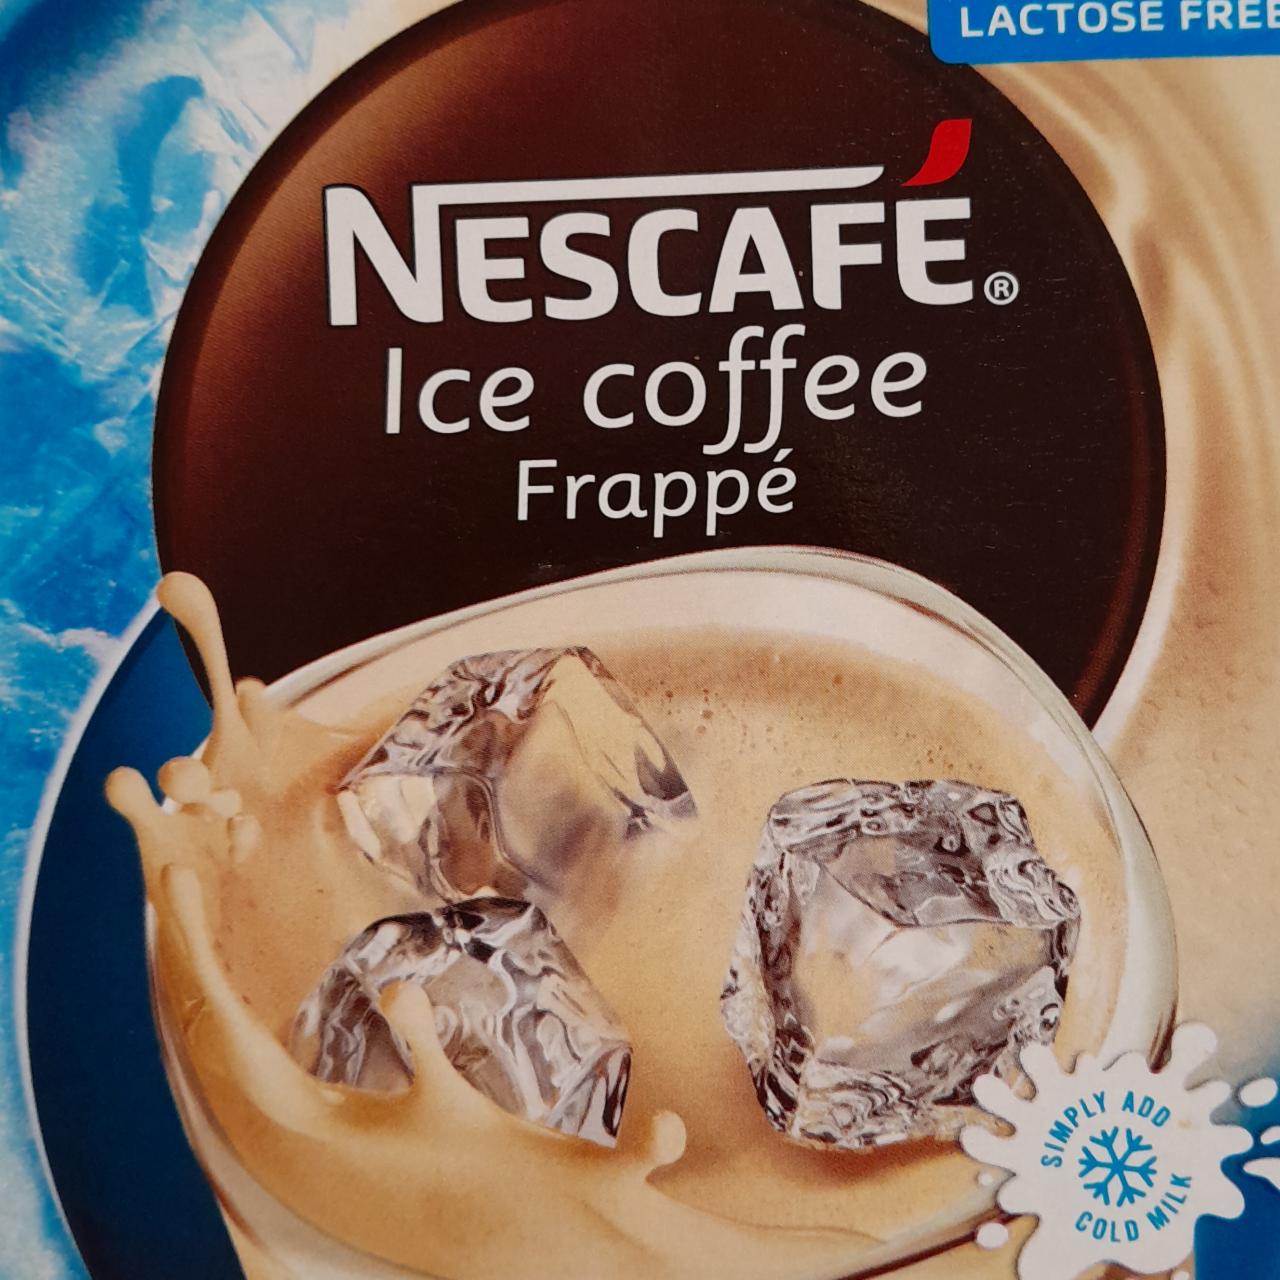 Фото - холодный кофе фраппе со льдом Nescafe